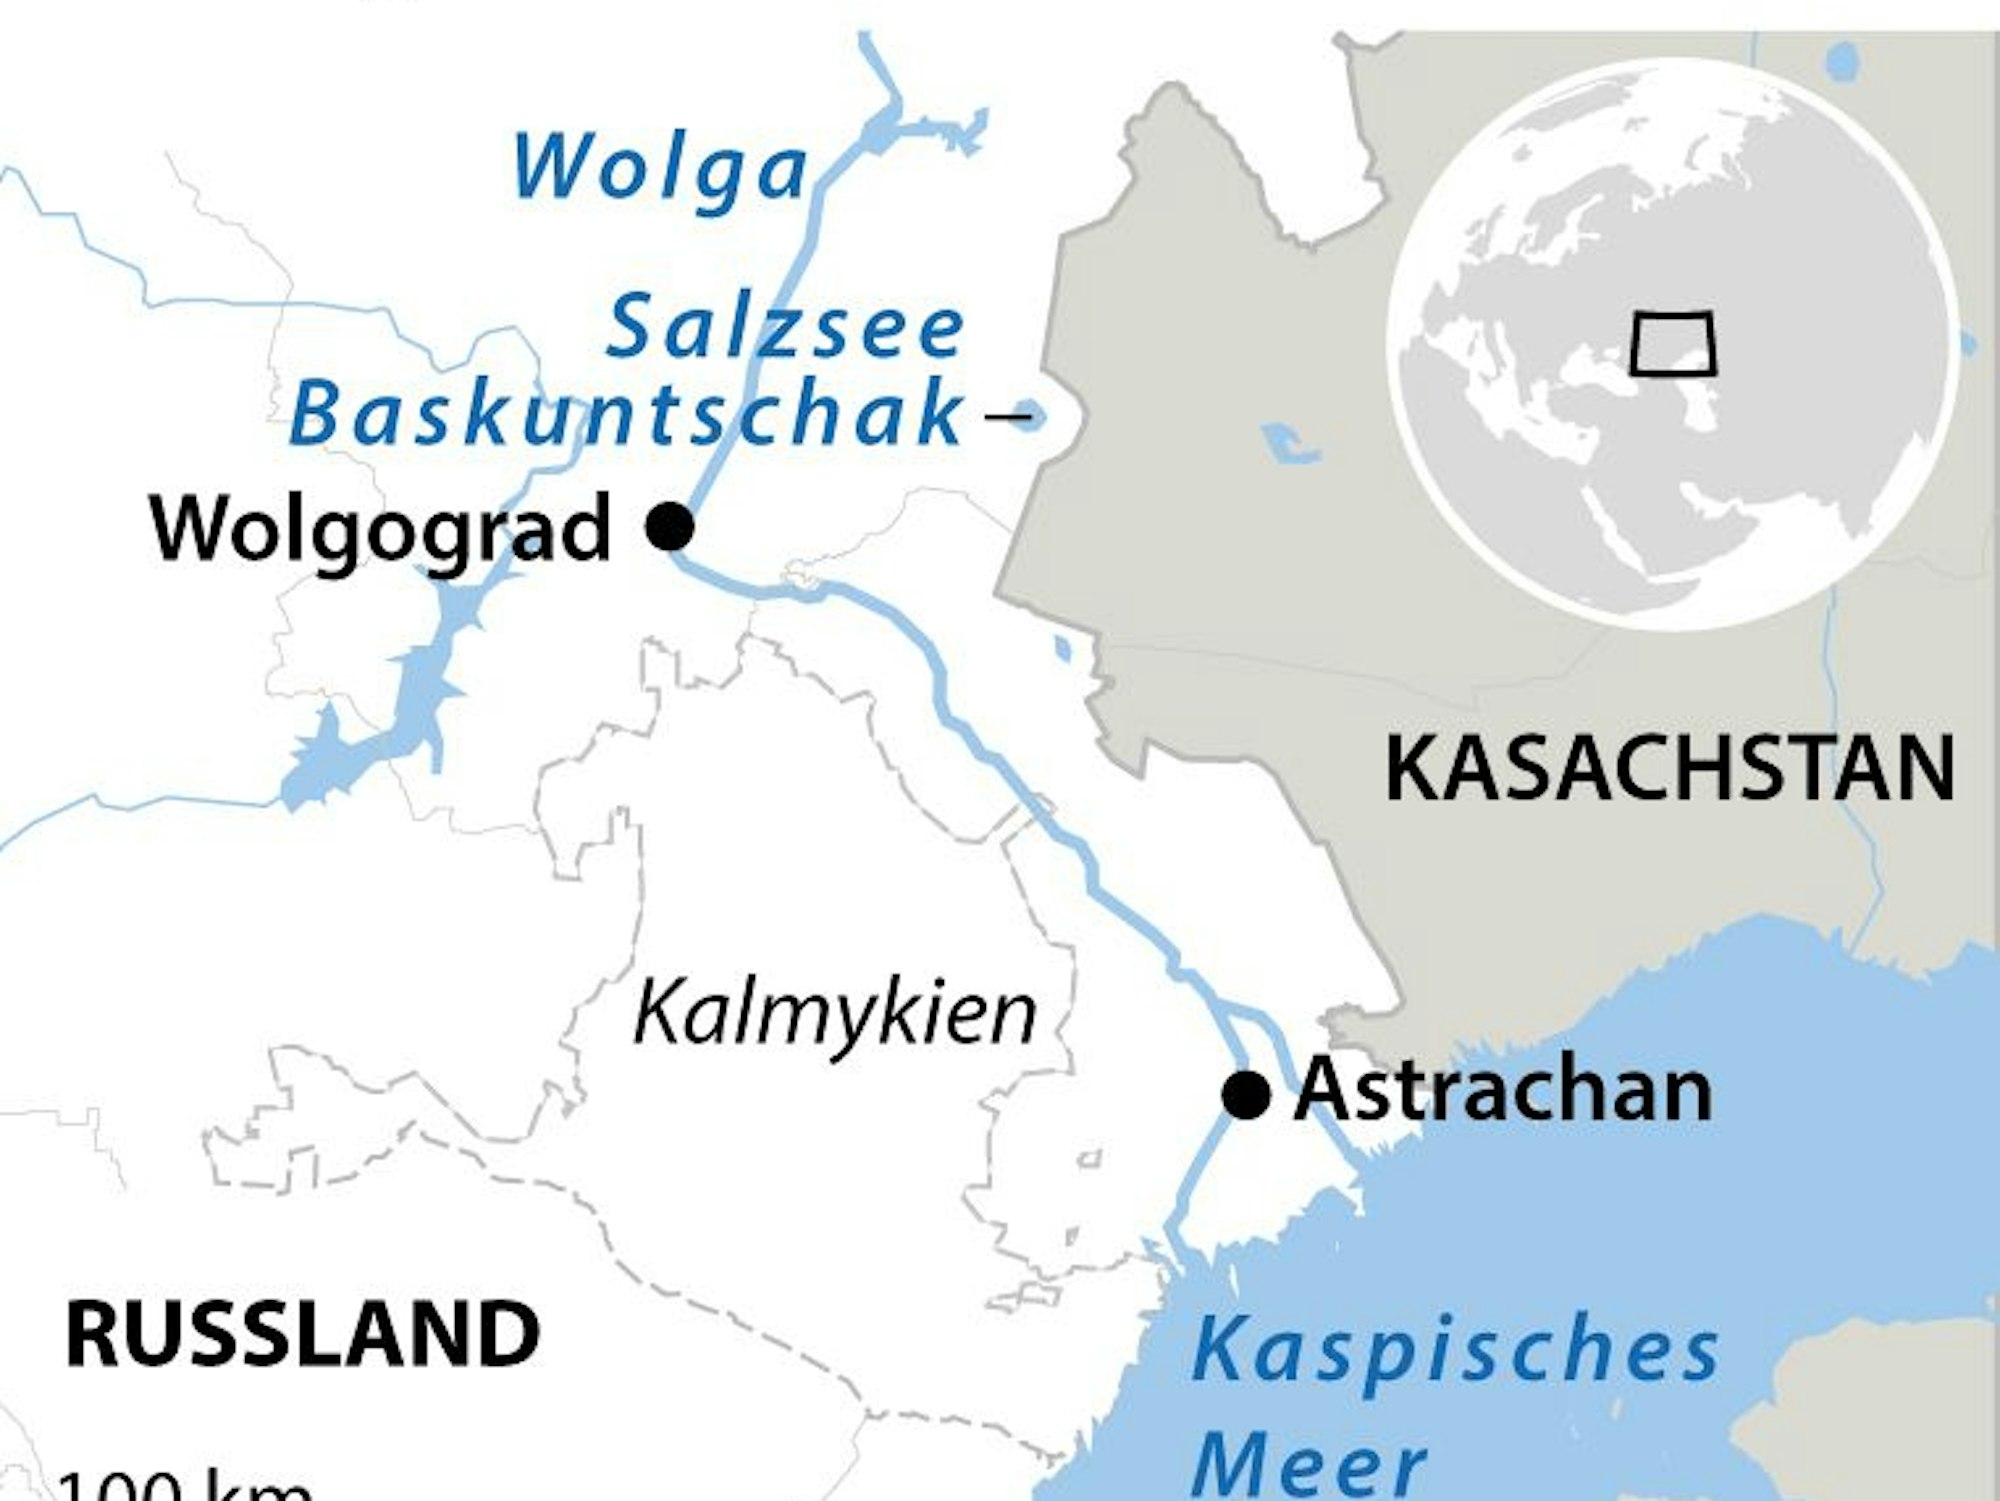 Der Fluss Wolga gehört zu den längsten und wasserreichsten Flüssen Europas. Die Wolga mündet im kaspischen Meer.